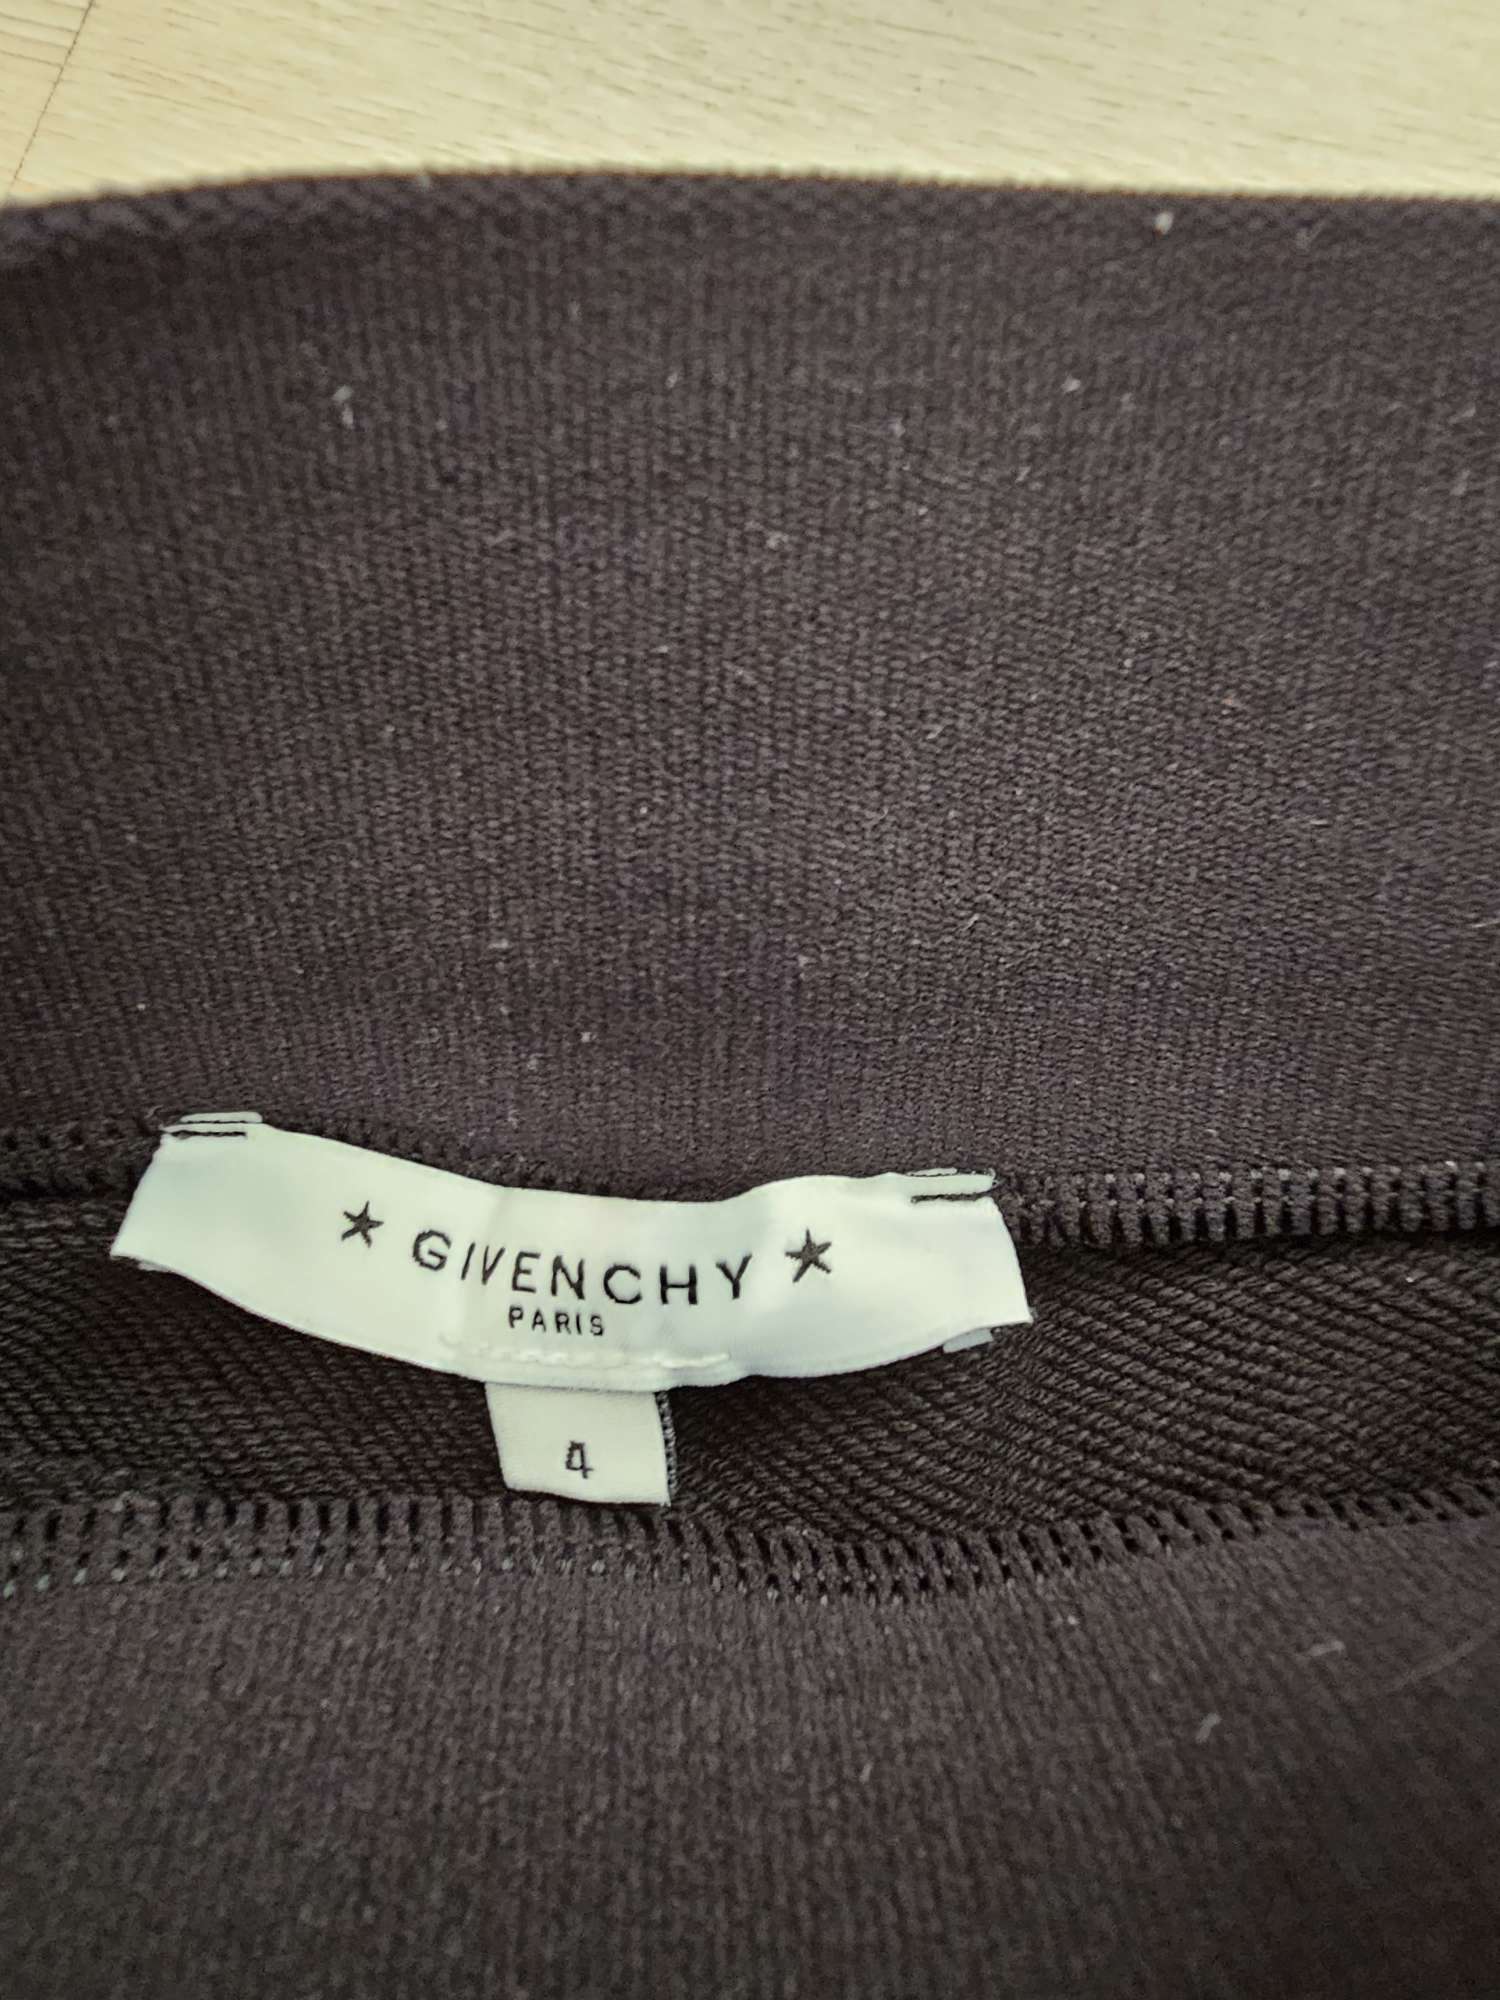 Givenchy kratasy